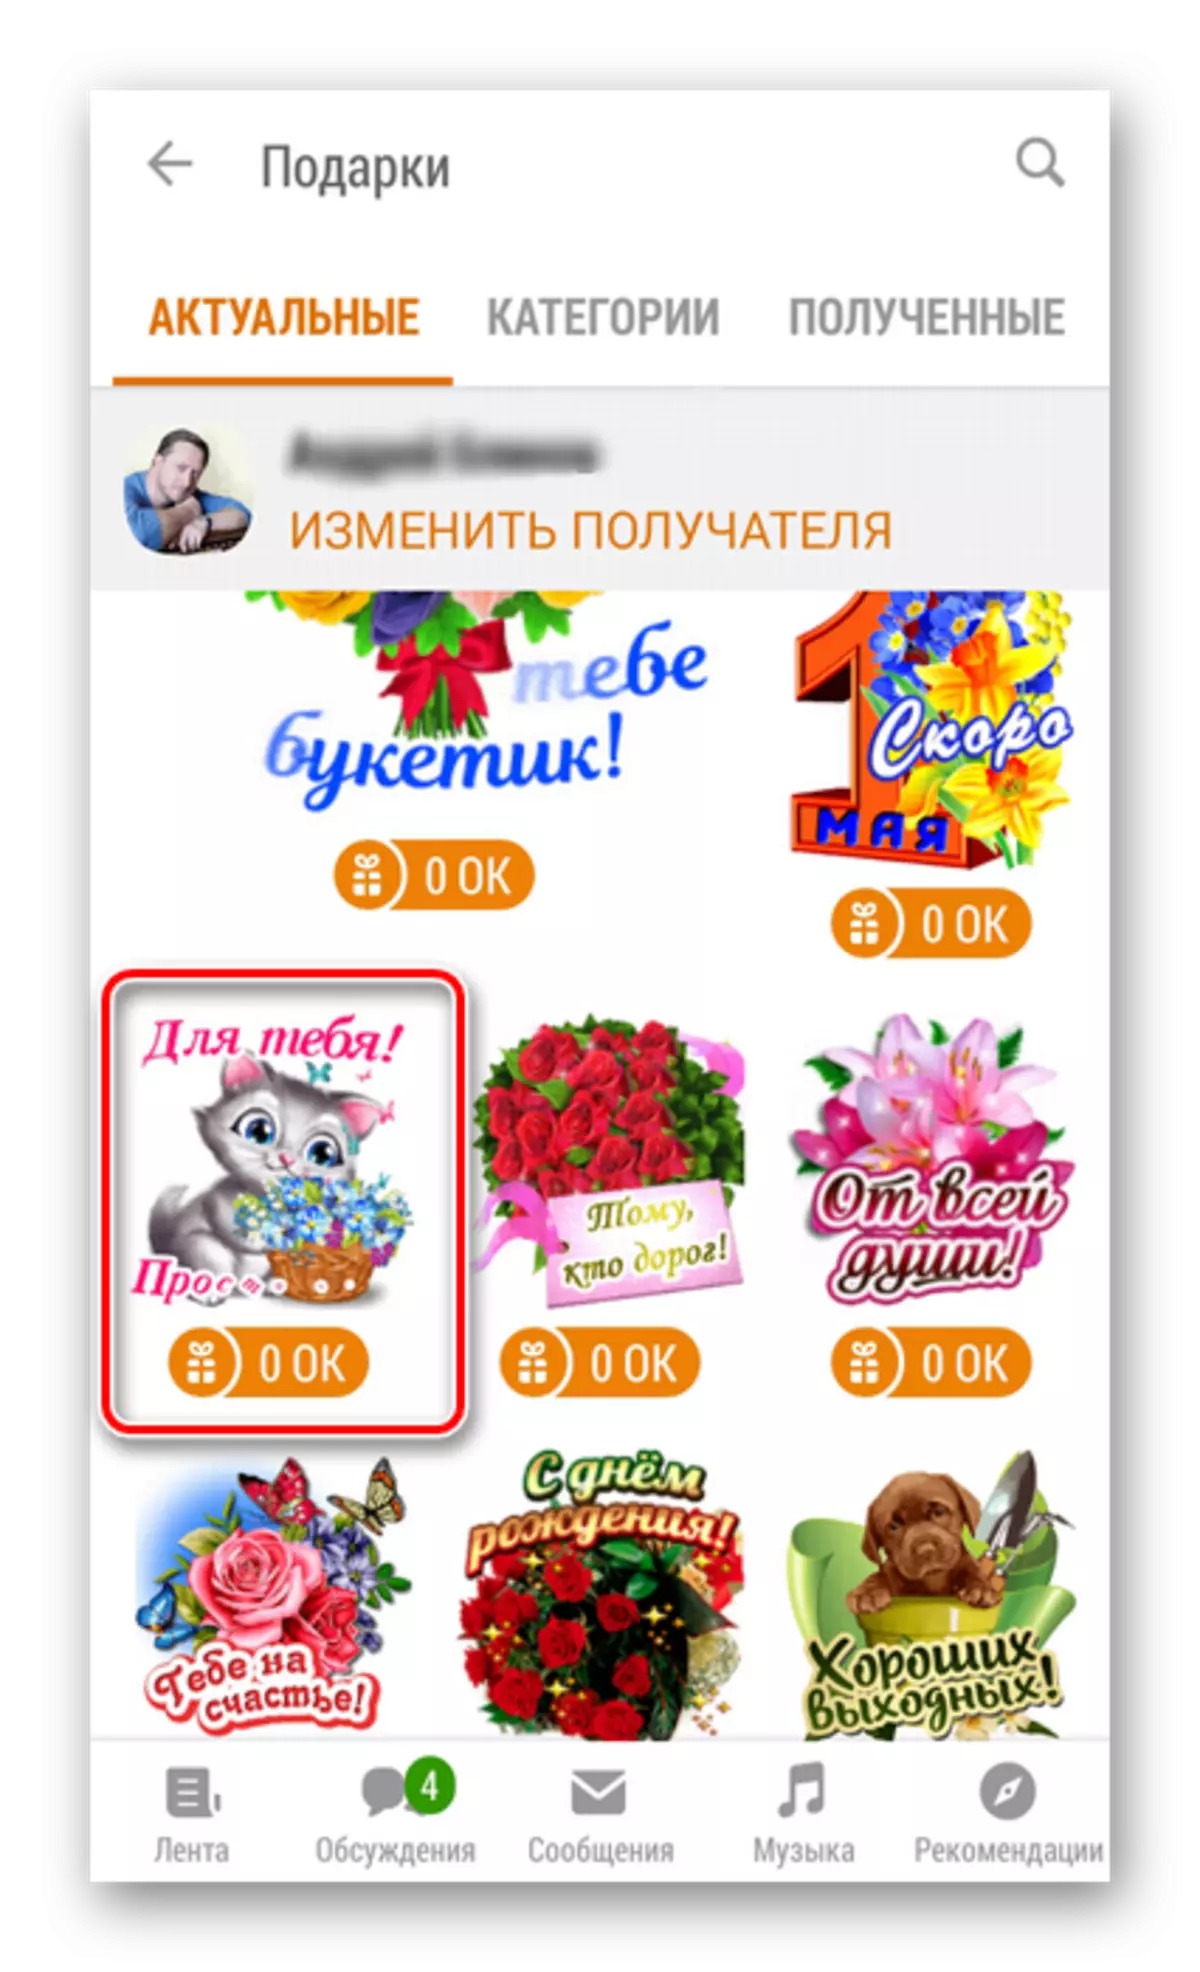 Apps Odnoklassniki ilovalarida sovg'alar